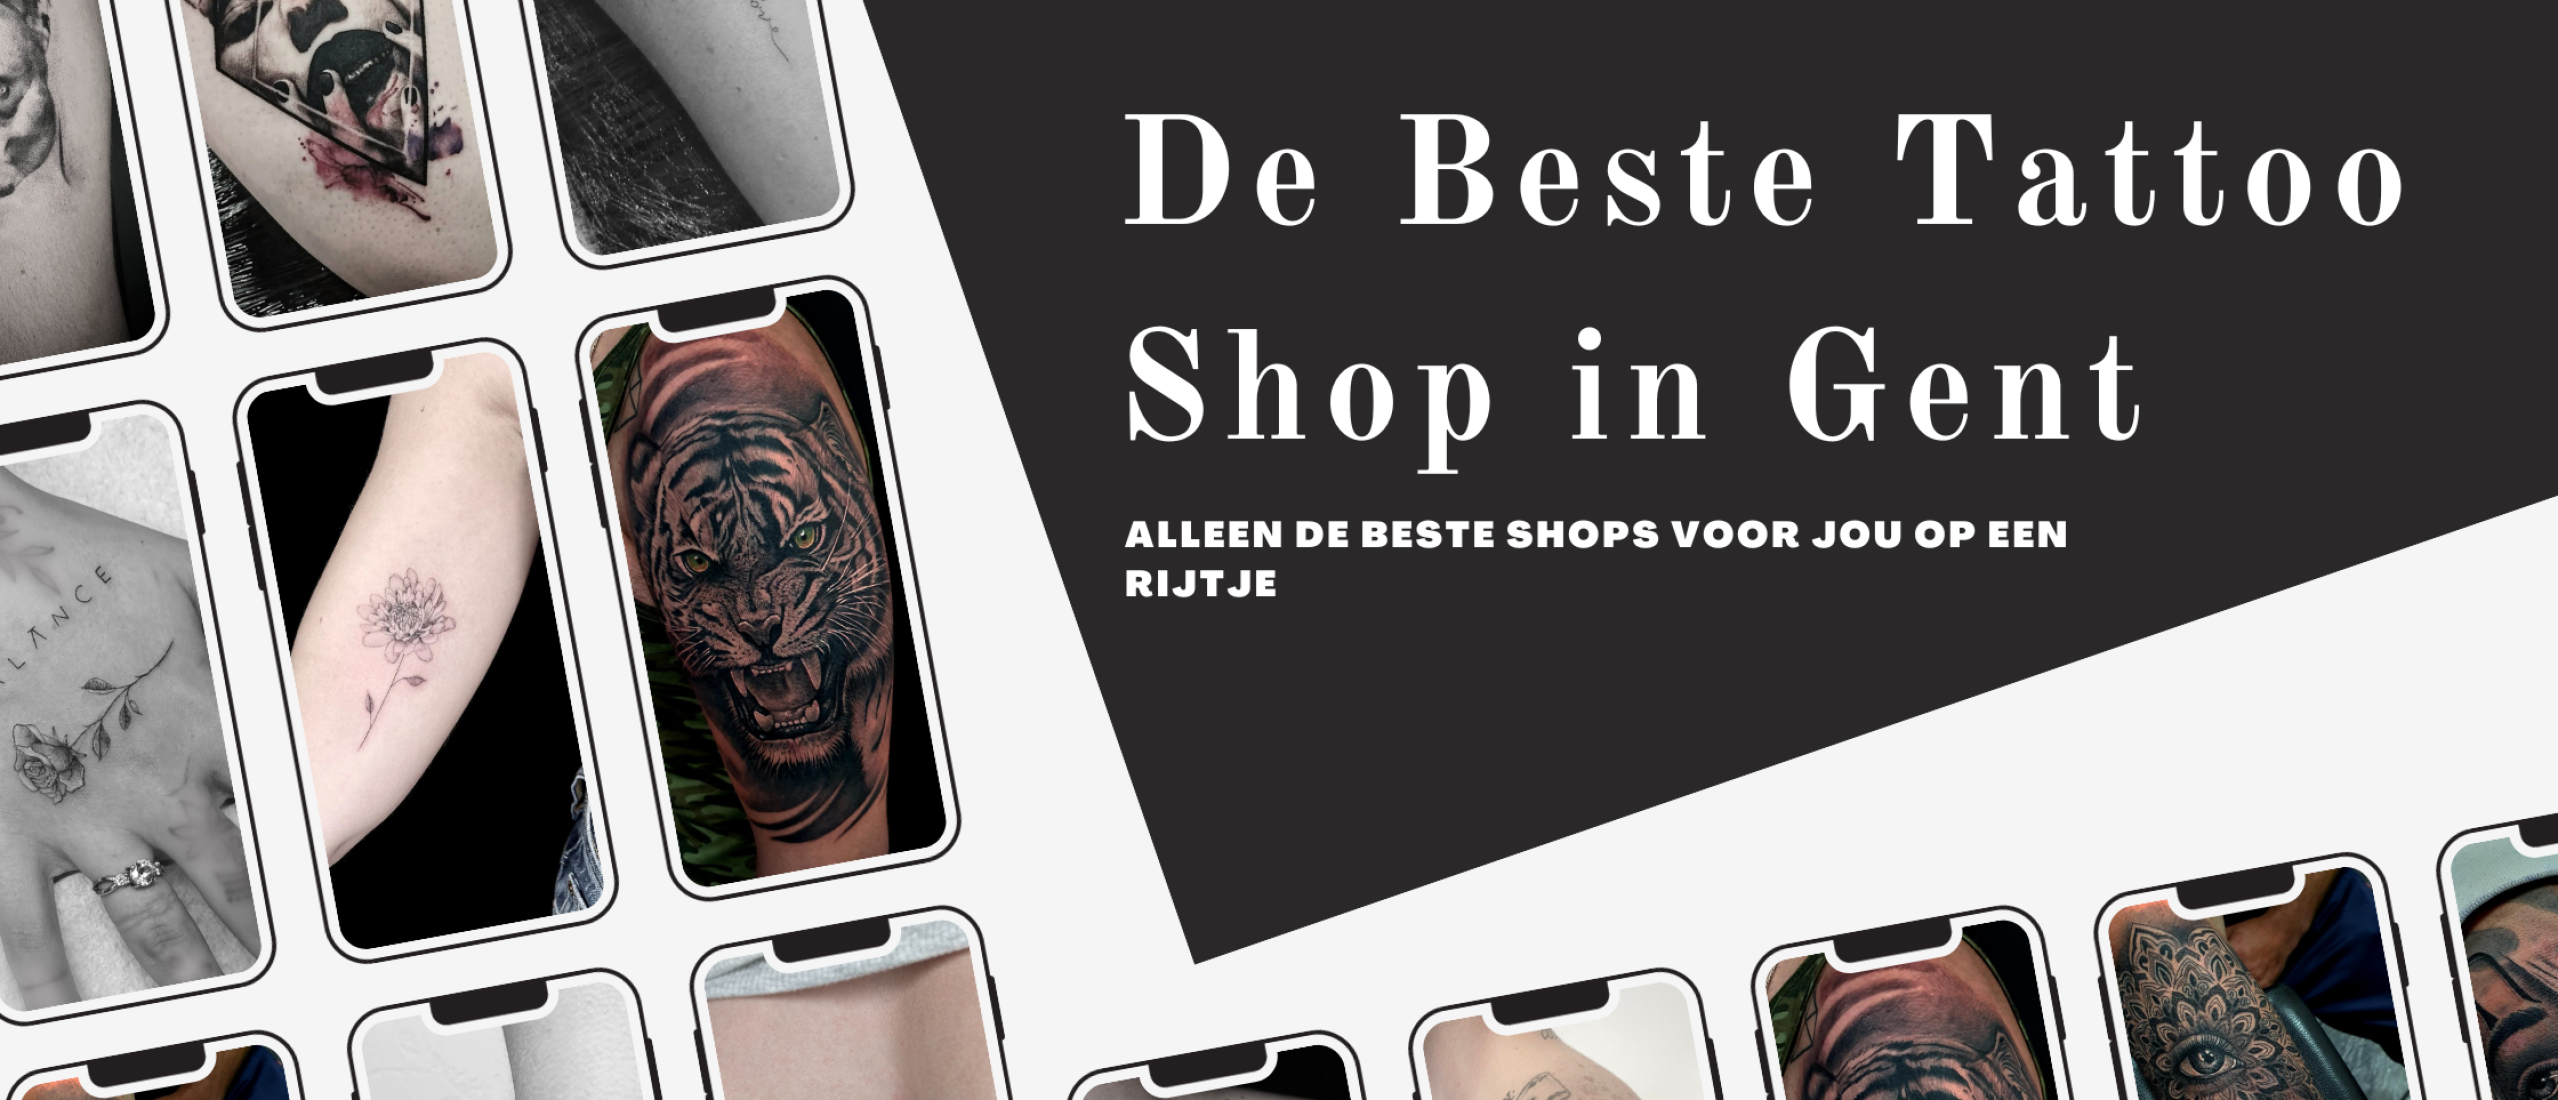 De beste tattoo shop in Gent